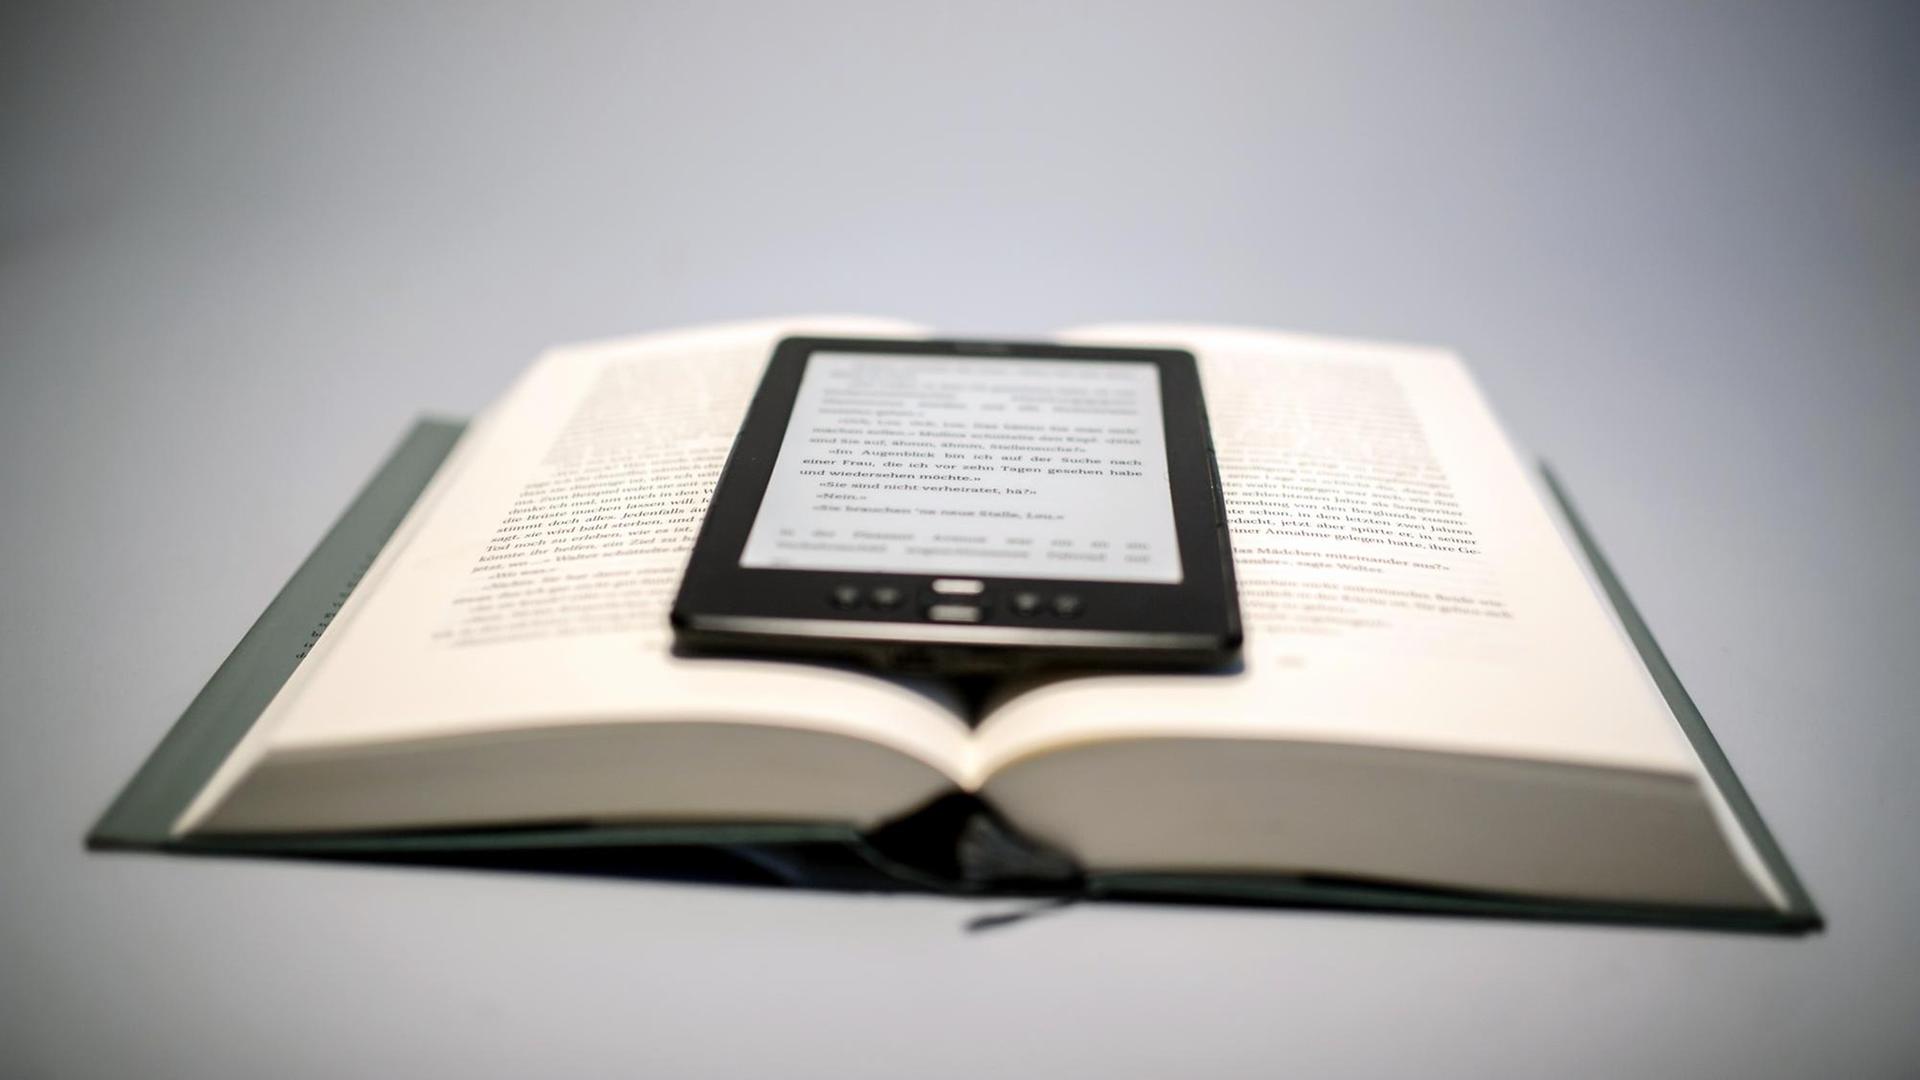 Ein E-Book-Reader liegt auf einem aufgeschlagenen Buch